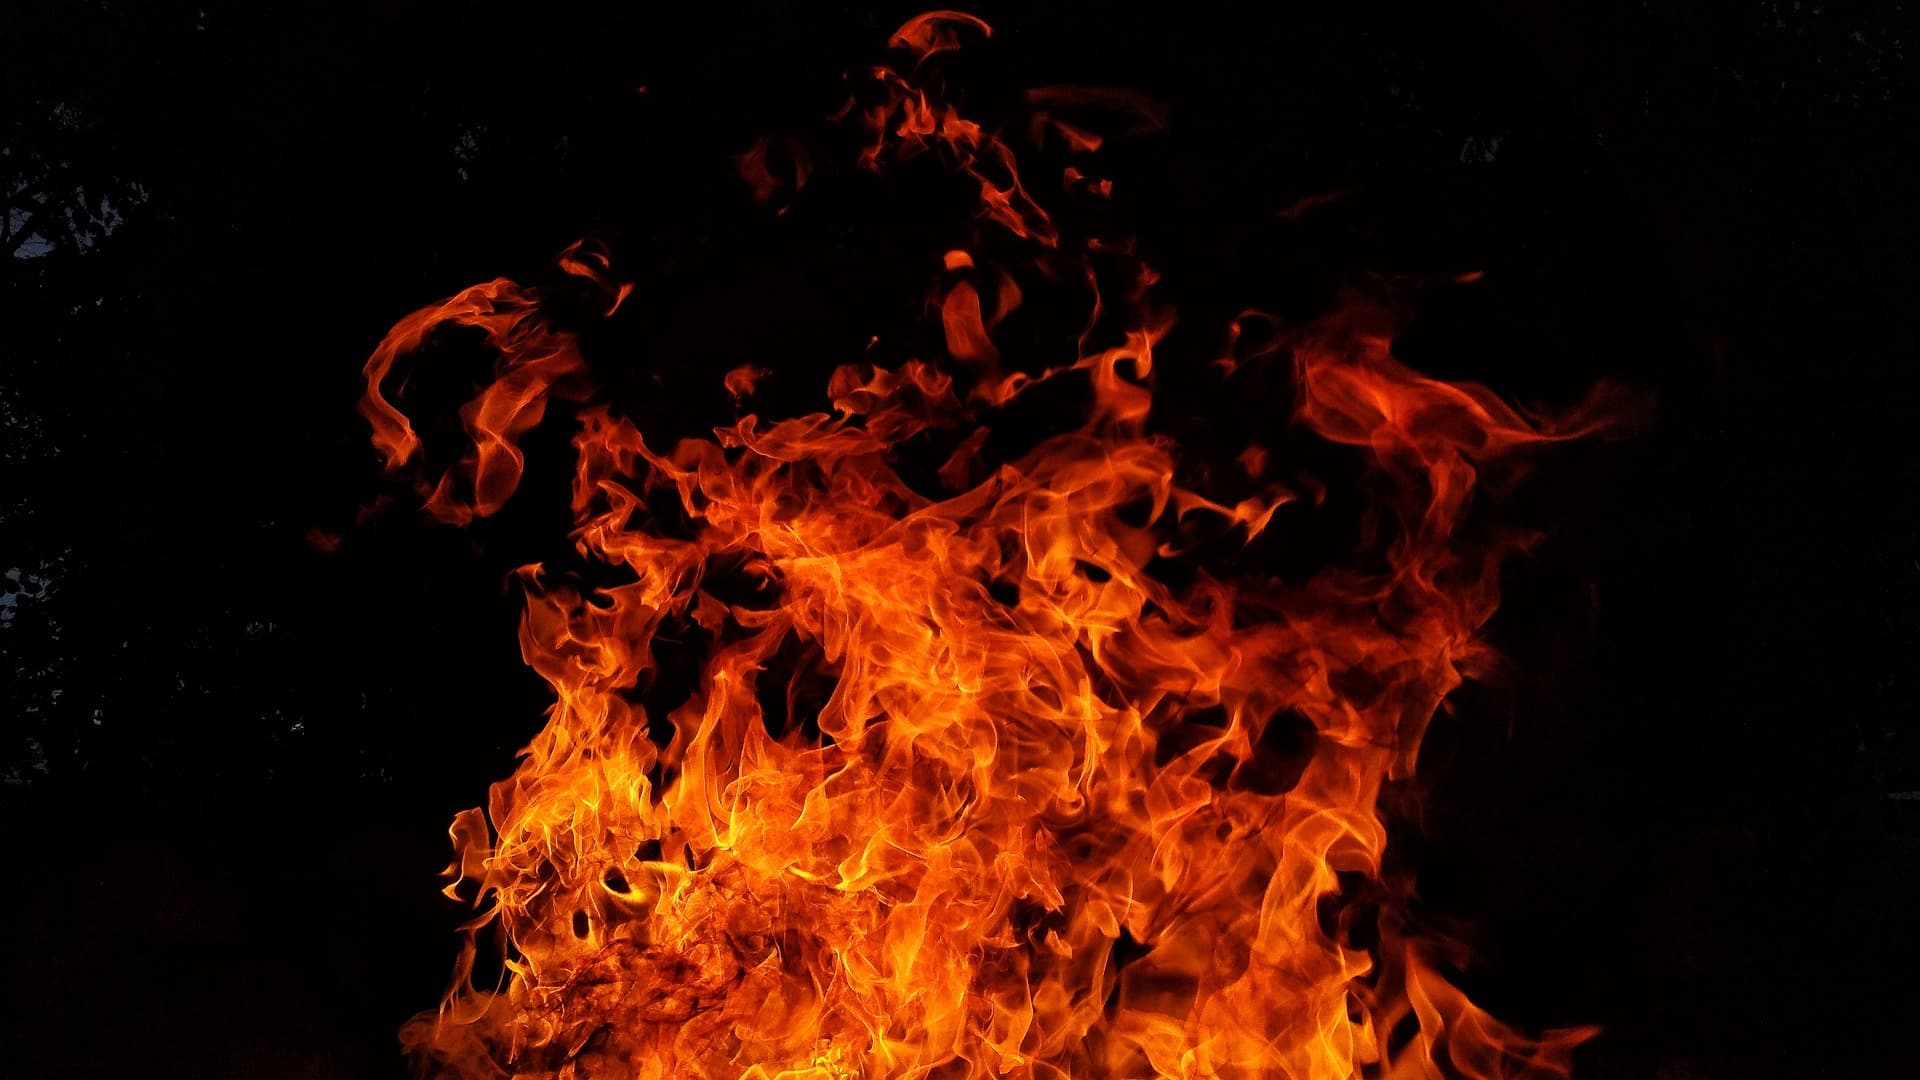 Belelöktek a tűzbe egy nyolcéves fiút